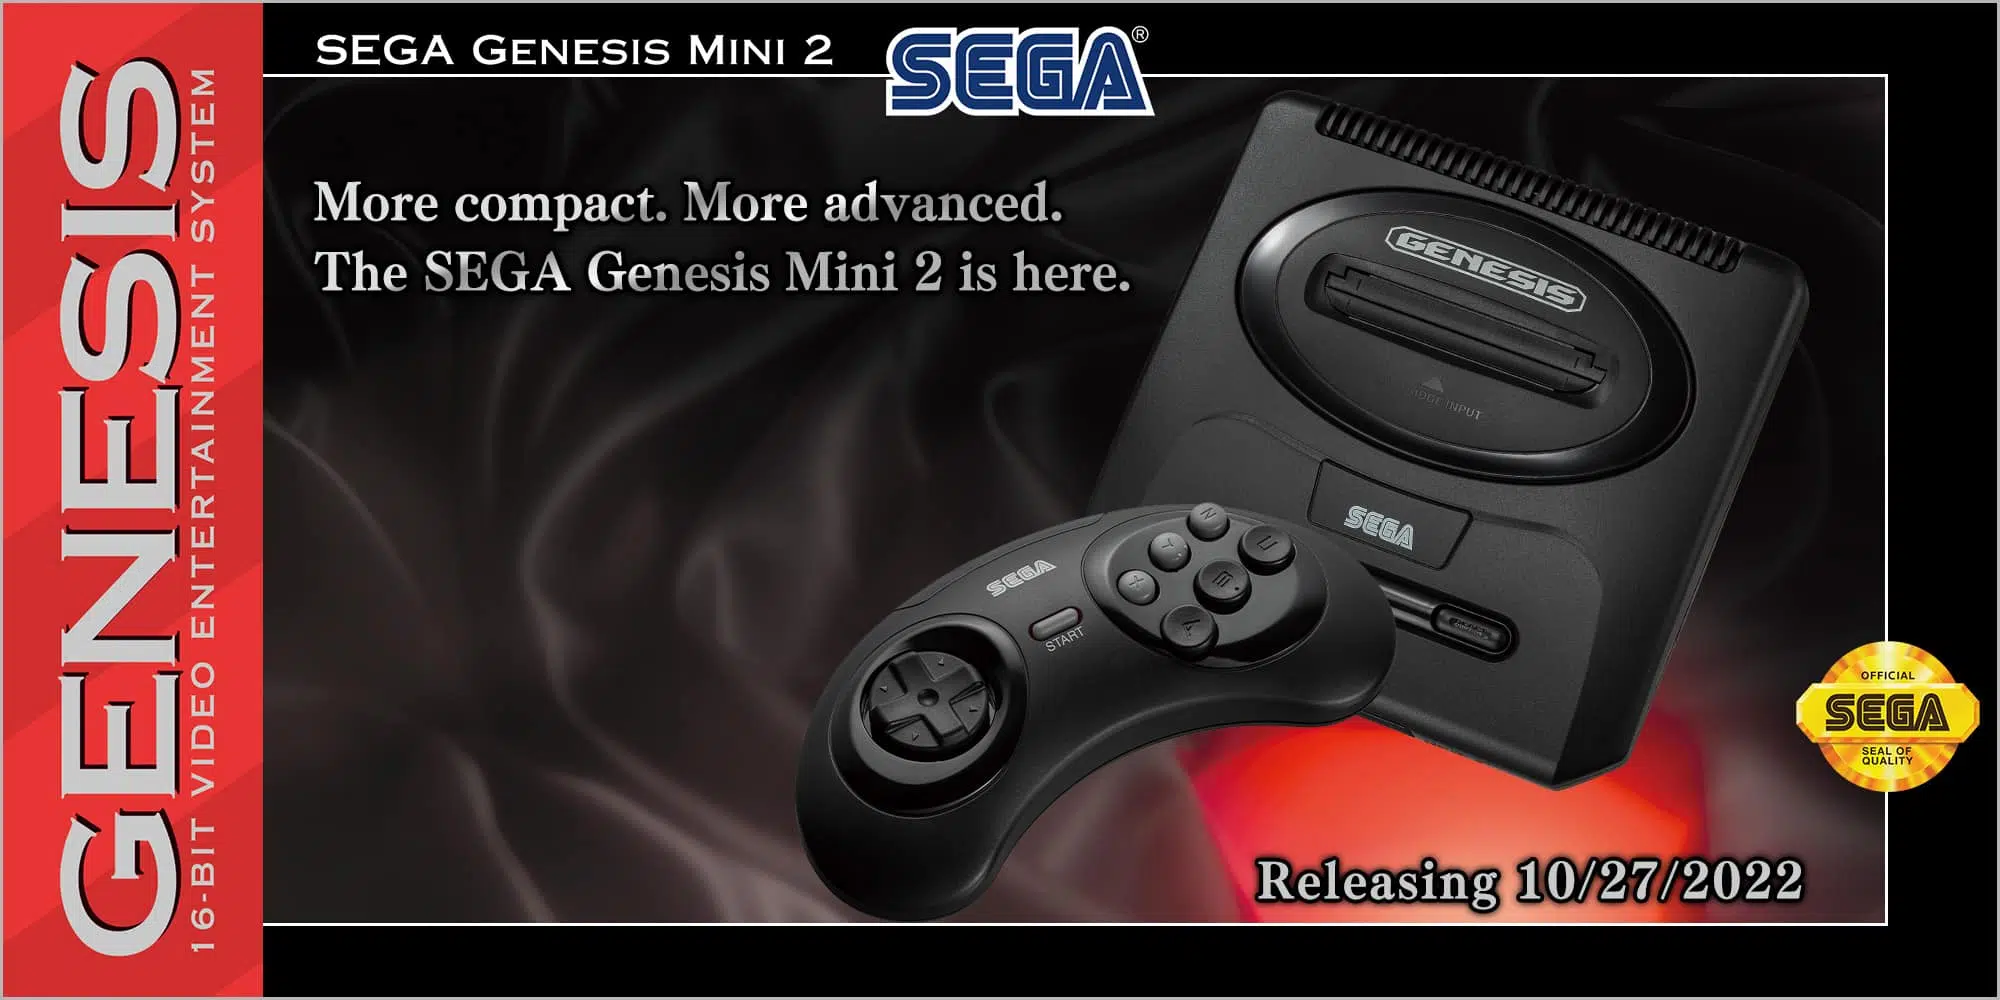 Sega Genesis Mini 2 games list